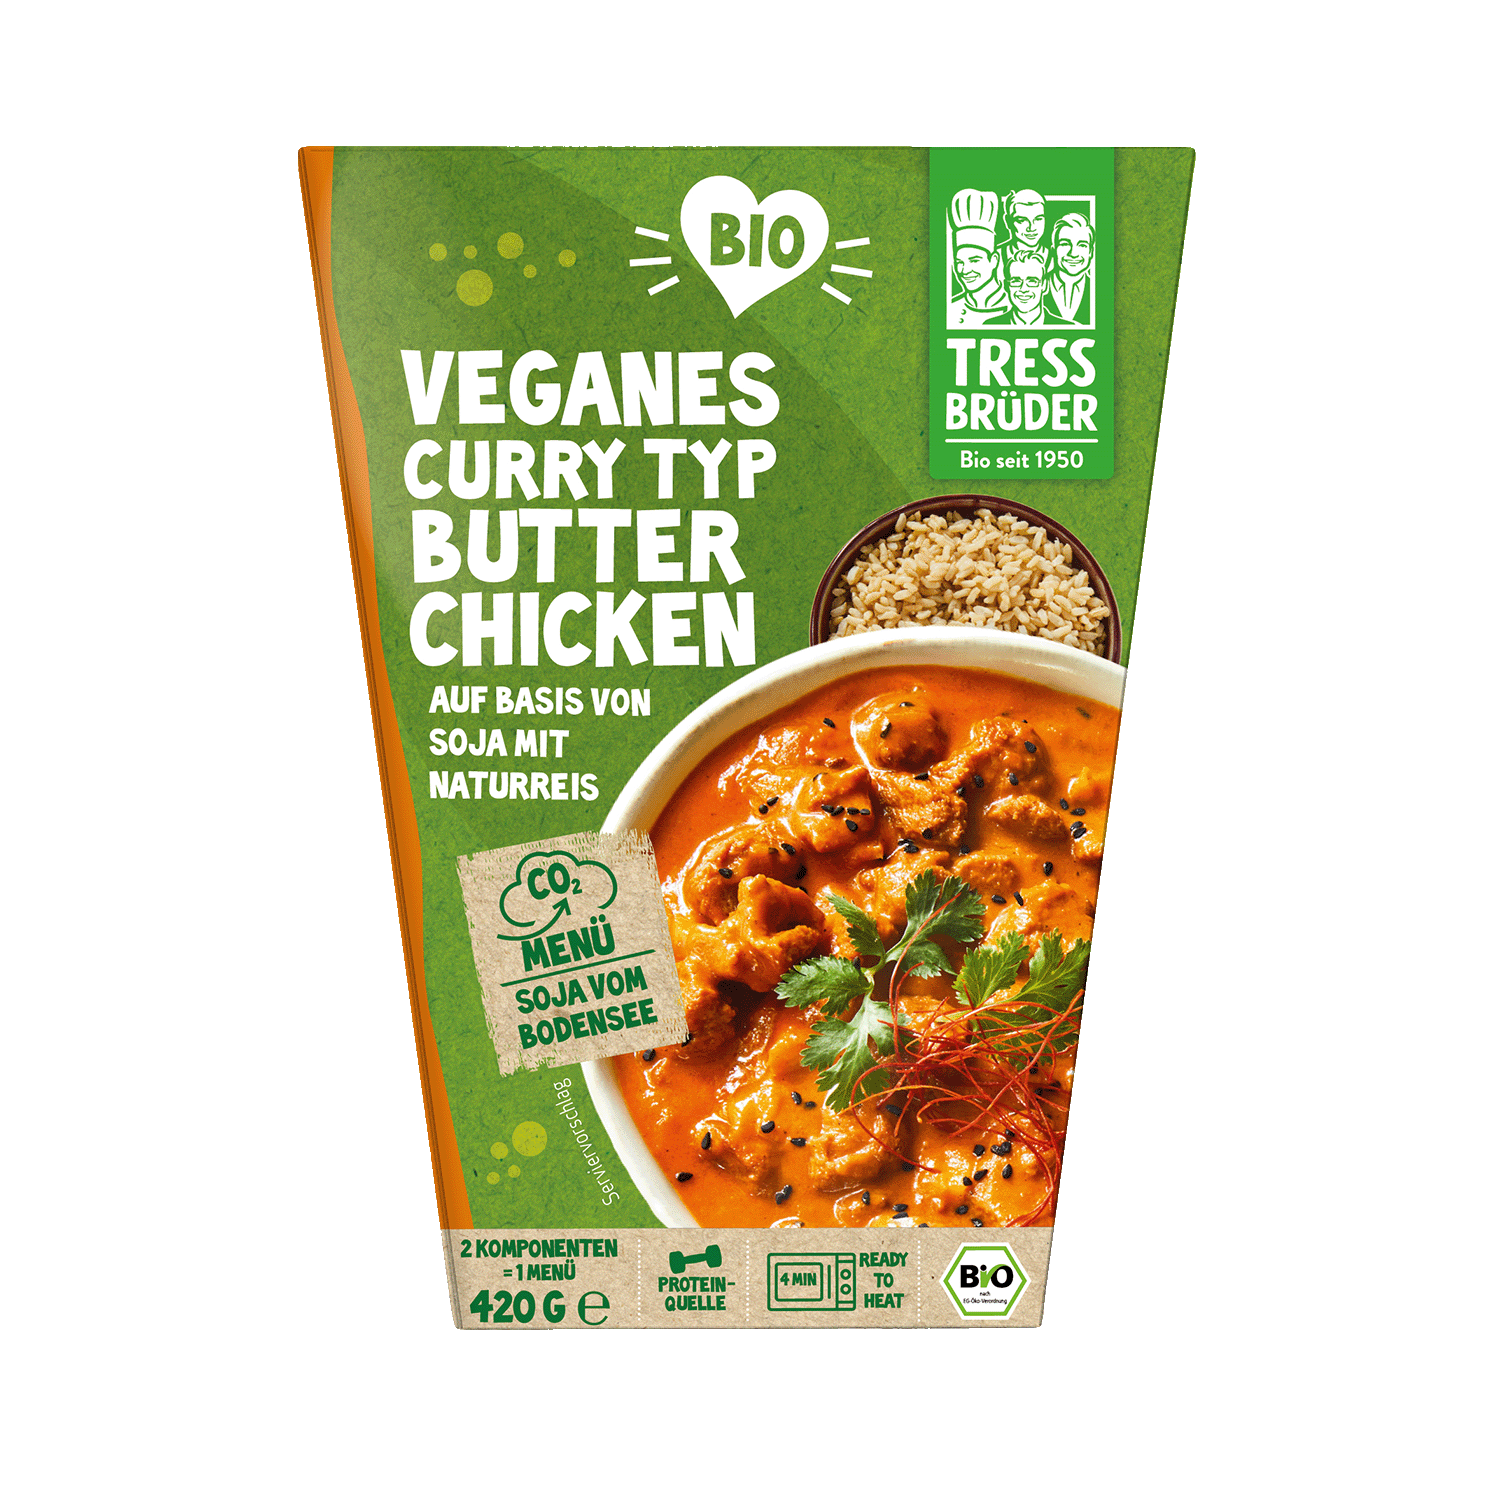 Veganes Curry Typ Butter Chicken auf Basis von Soja mit Naturreis, BIO, 420g